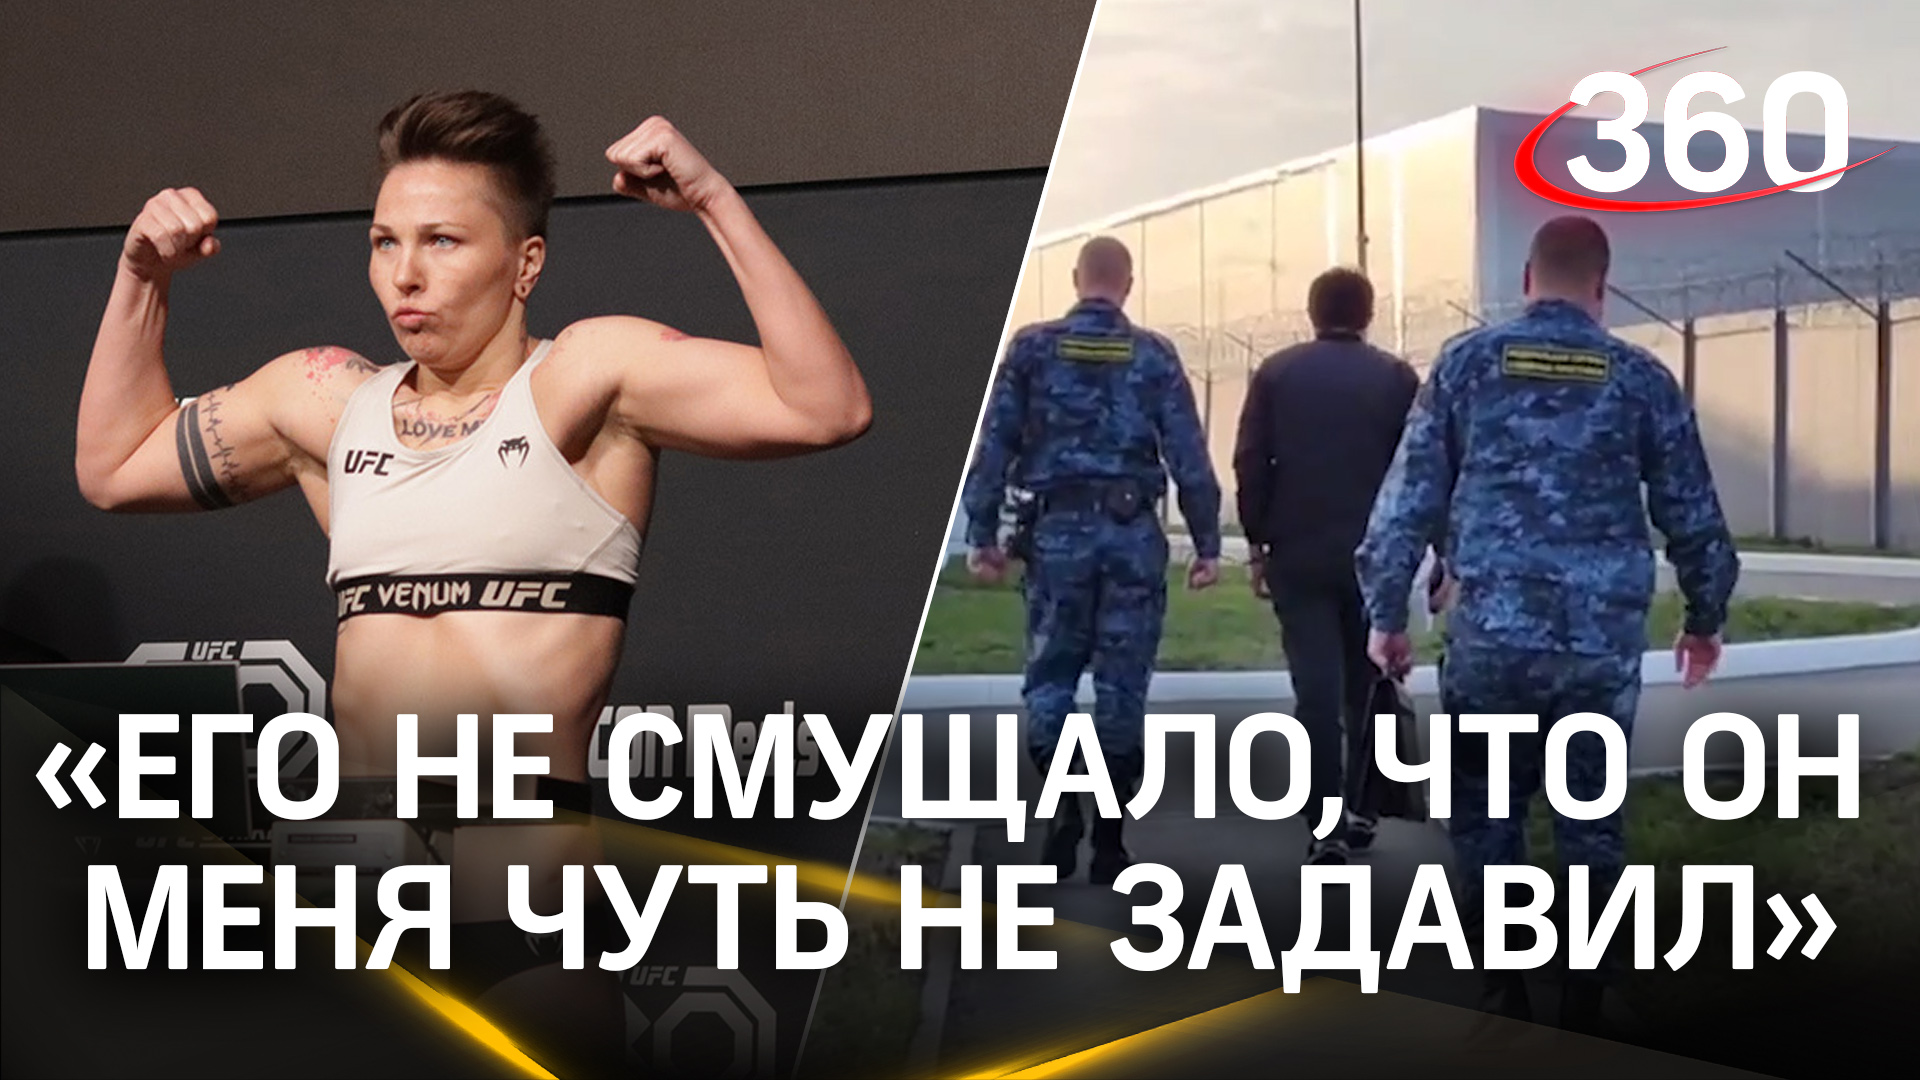 Мужчина обзывал девушек на улице в Челябинске. Одна из них - боец UFC Ирина Алексеева